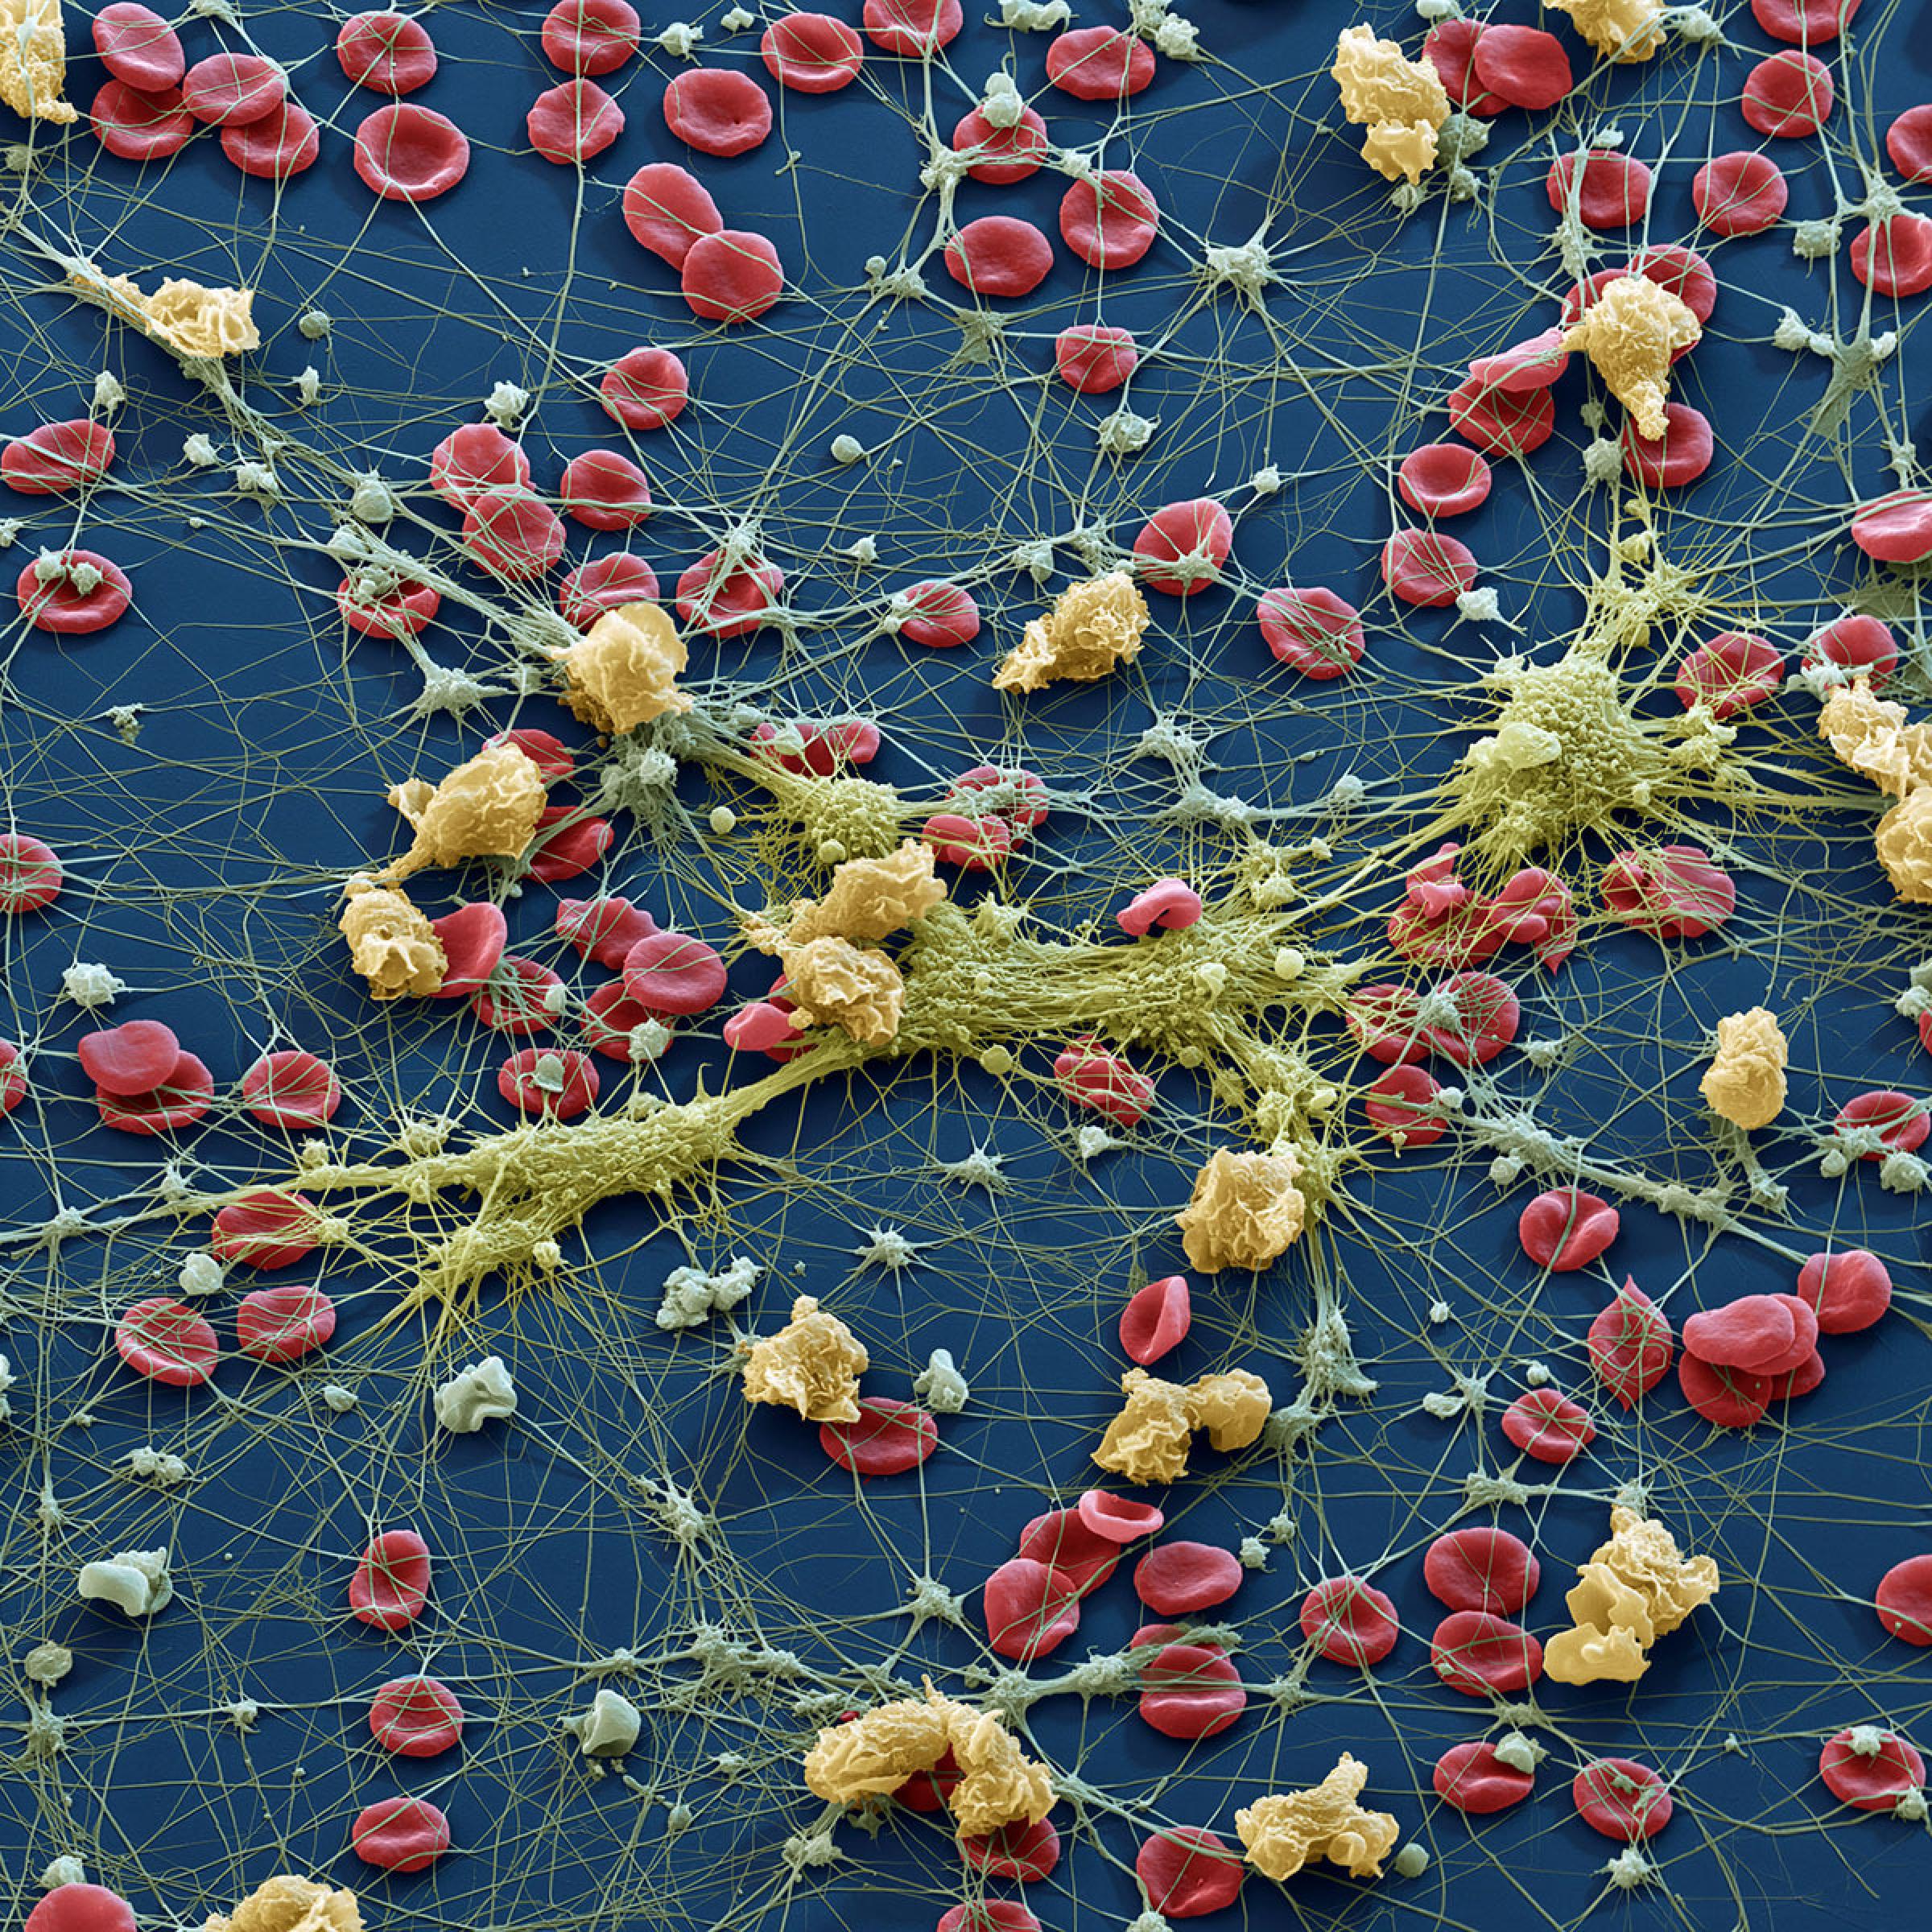 Medizin, Blut: Erythrozyten, Lymphozyten und Thrombozyten.
Das Bild zeigt die wichtigsten Blutzellen: Die Erythrozyten (Rote Blutkörperchen) sorgen fur den Sauerstoff-Transport im Körper. Die Thrombozyten ( Blutplättchen, grau) werden wie die Ery's im Knochenmark gebildet und steuern durch Abgabe ihrer „Plättchenfaktoren“ die Blutgerinnung. Leukozyten (Weisse Blutkörperchen, beige+ gelbgrün)  sind im Körper für die Immunabwehr verantwortlich. Auf dem Bild haben einige weisse Blutzellen (Monozyten) Pseudopodien ausgebildet, andere (Granulozyten, gelblich gefärbt) haben Ihre kugelige Form erhalten.
Raster-Elektronenmikroskop, Vergrösserung 960x